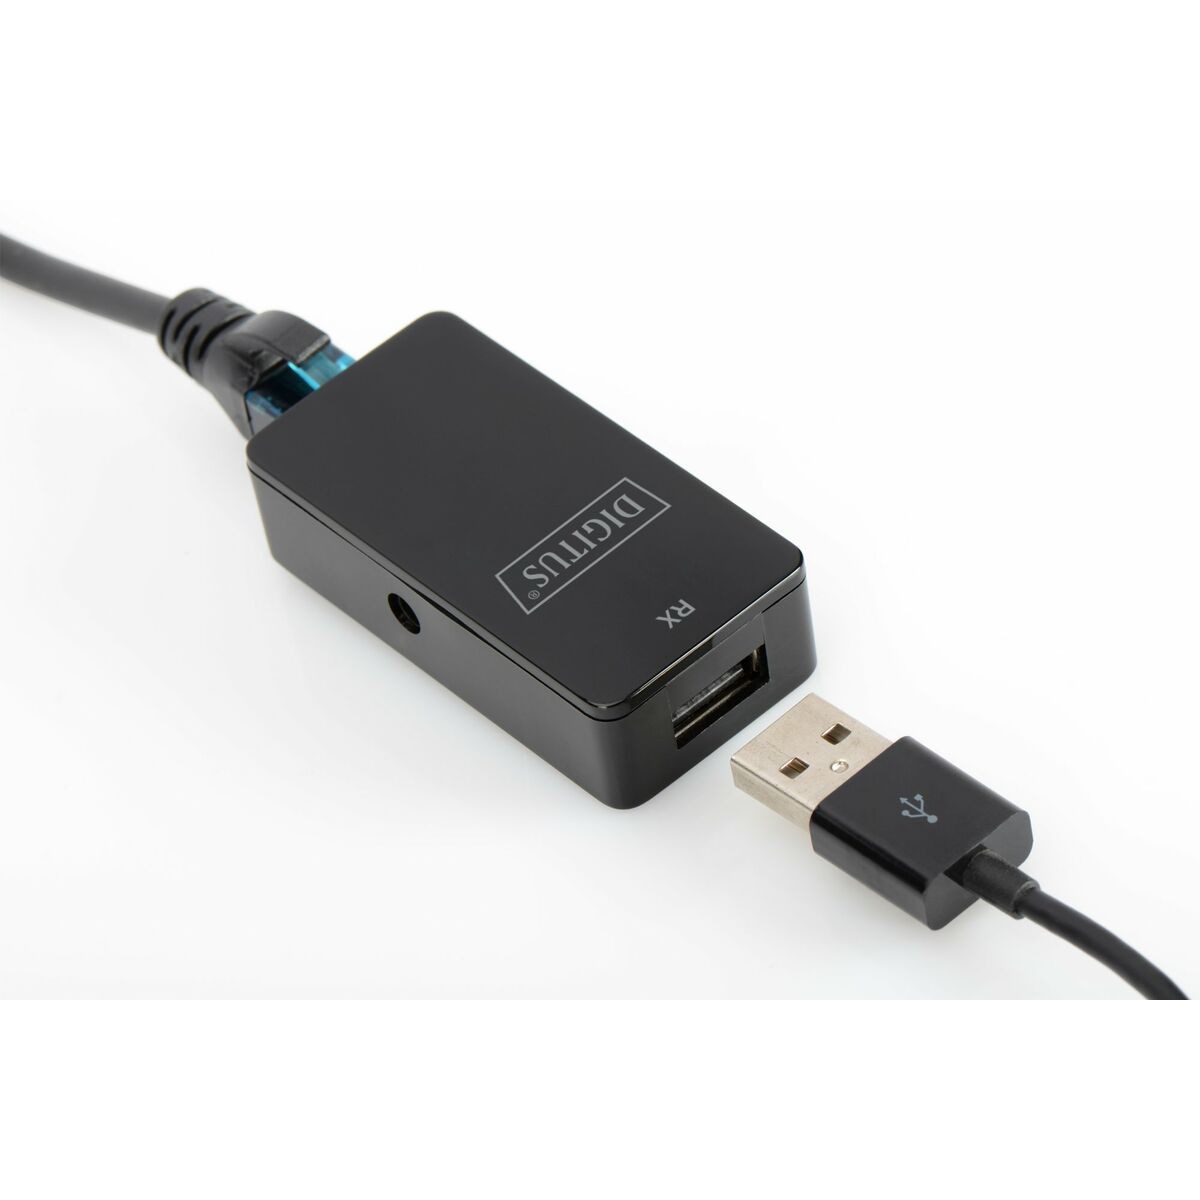 Parasurtenseur pour câble Ethernet Digitus by Assmann DA-70141.